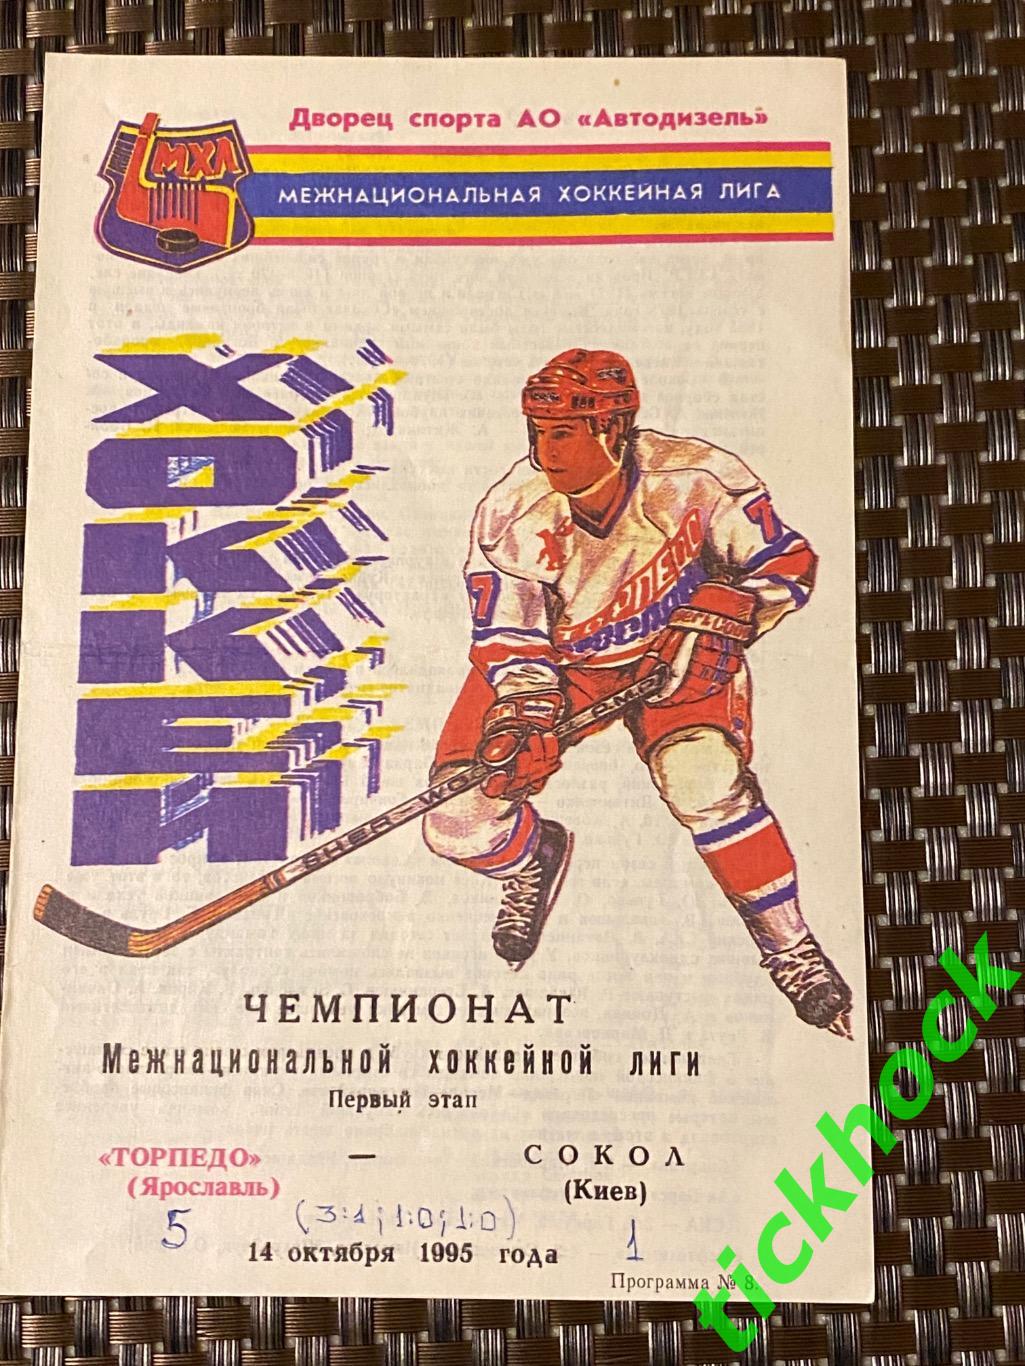 Торпедо Ярославль - Сокол Киев - 14.10.1995. чемпионат МХЛ